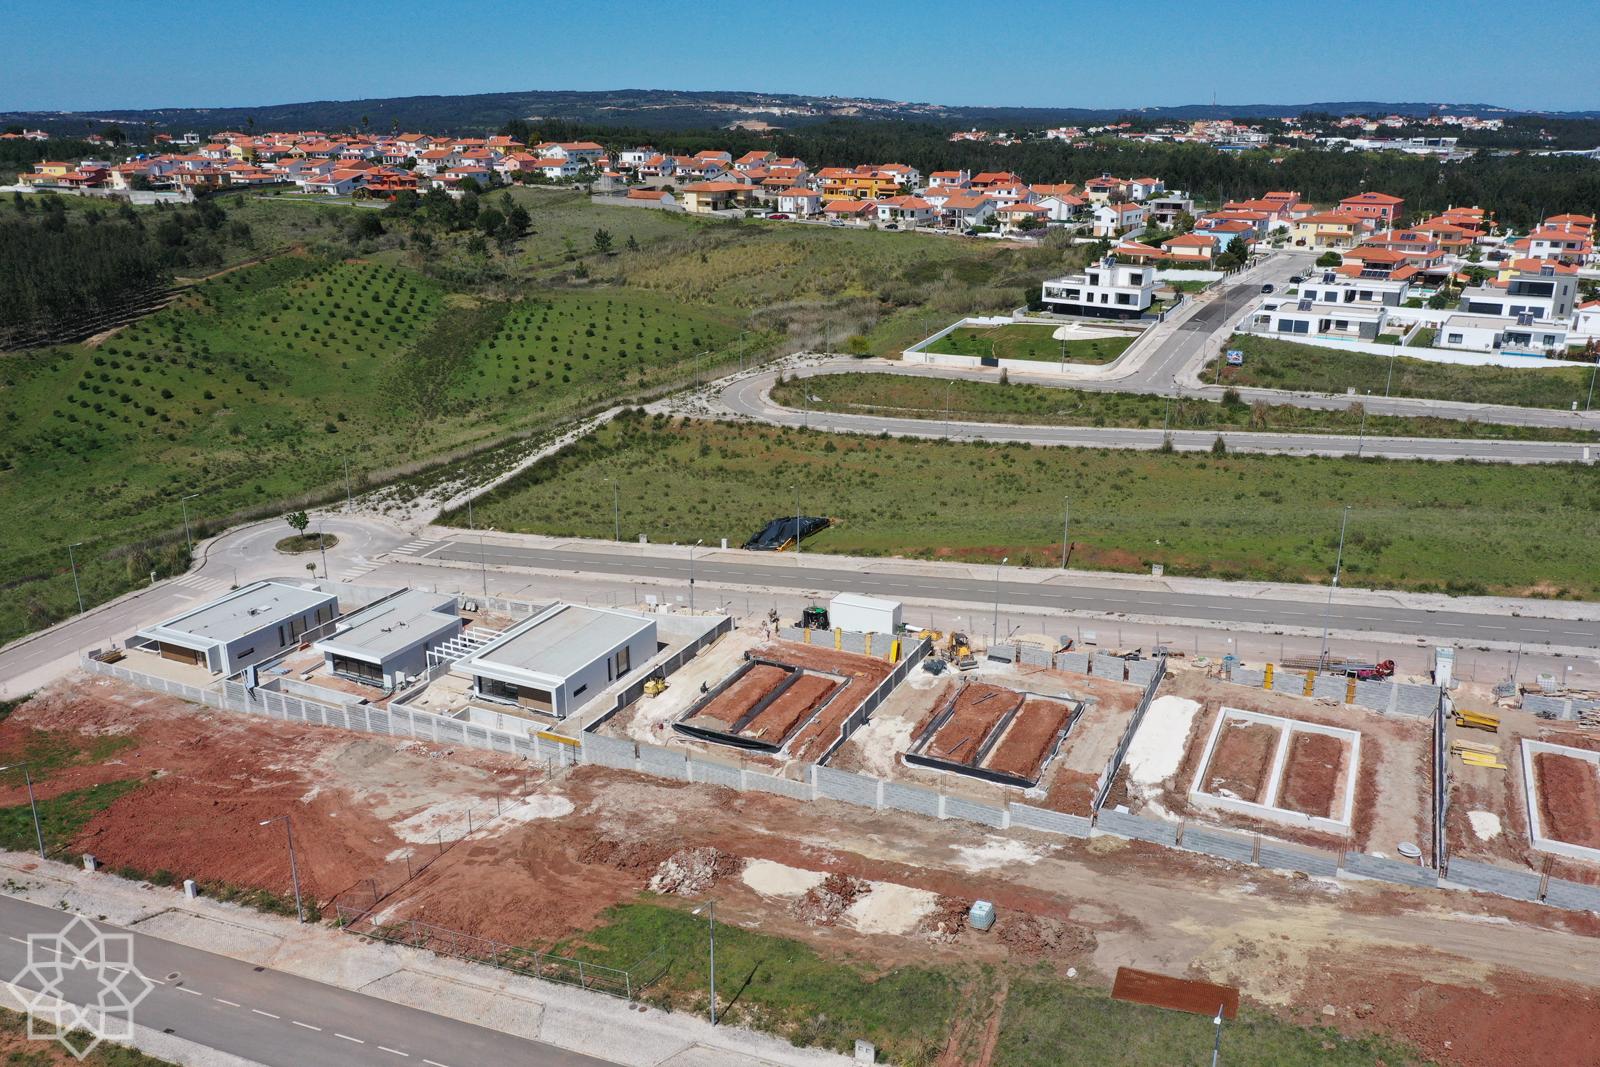 Köp hus betala med krypto i Portugal